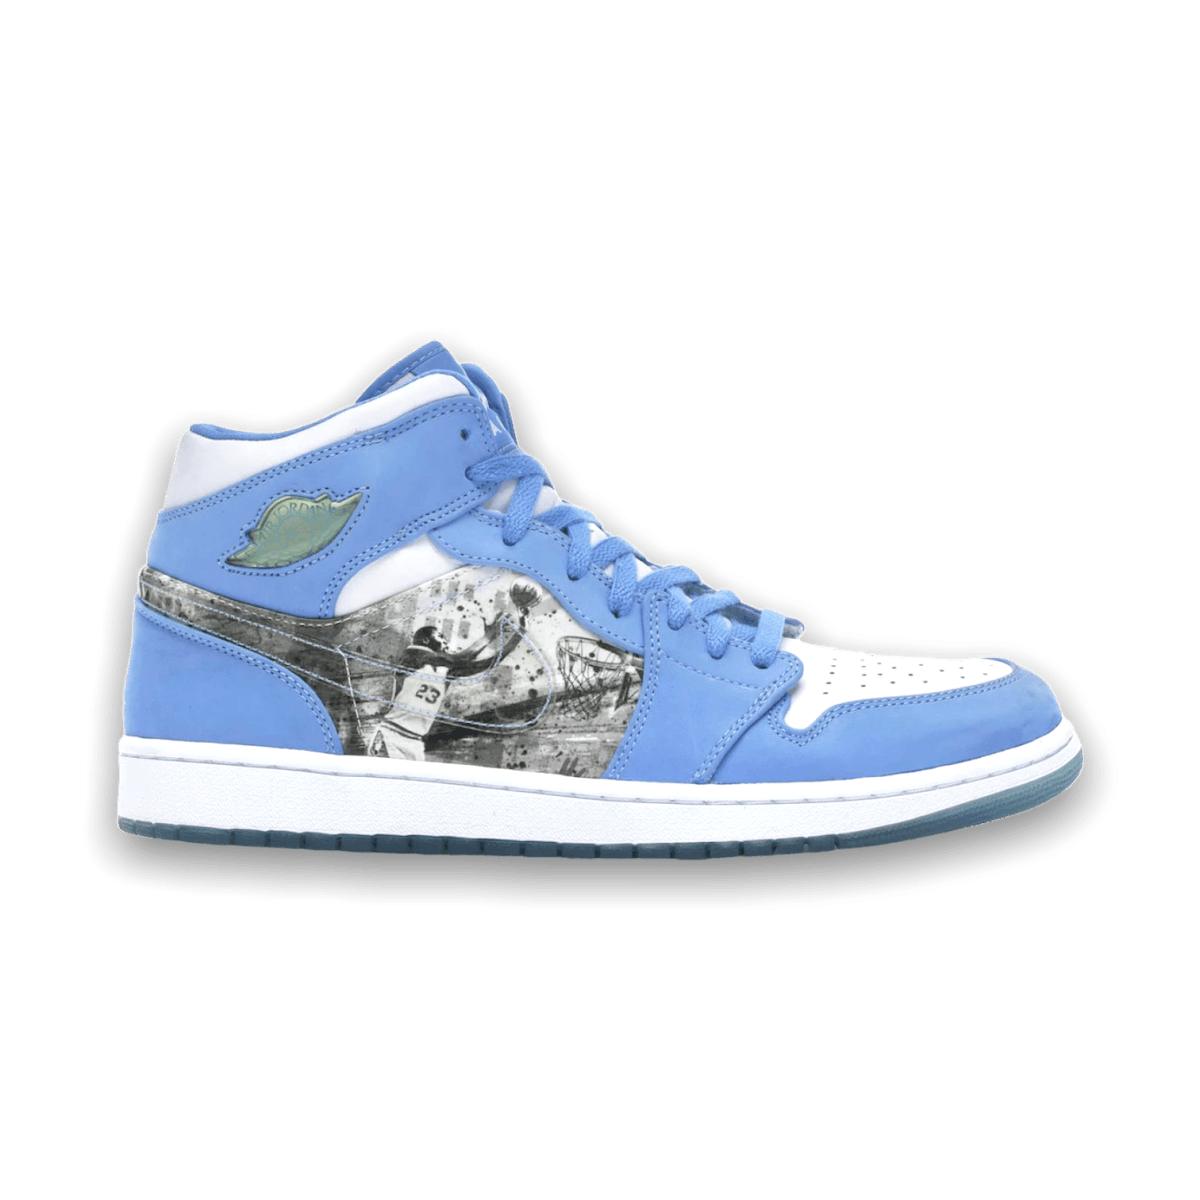 Jordan 1 Retro Alpha 'White University Blue' - Mid Sneaker - Jawns on Fire Sneakers & Streetwear